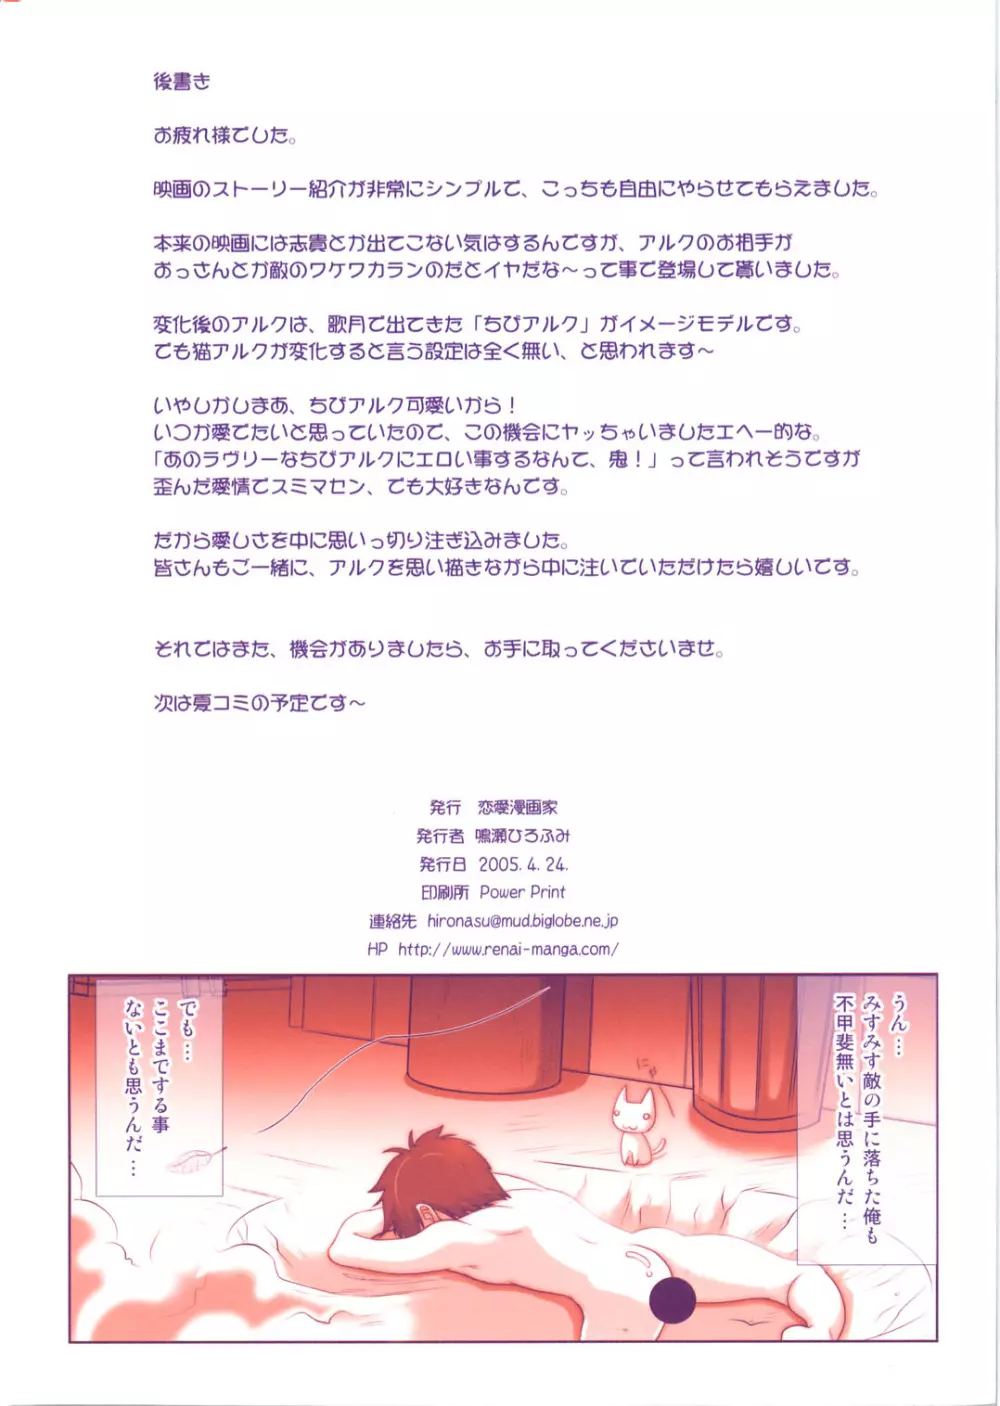 (Cレヴォ37) [恋愛漫画家 (鳴瀬ひろふみ)] ネコアルク -THE MOVIE- エイプリルフールをぶっ飛ばせ!! (月姫) 25ページ